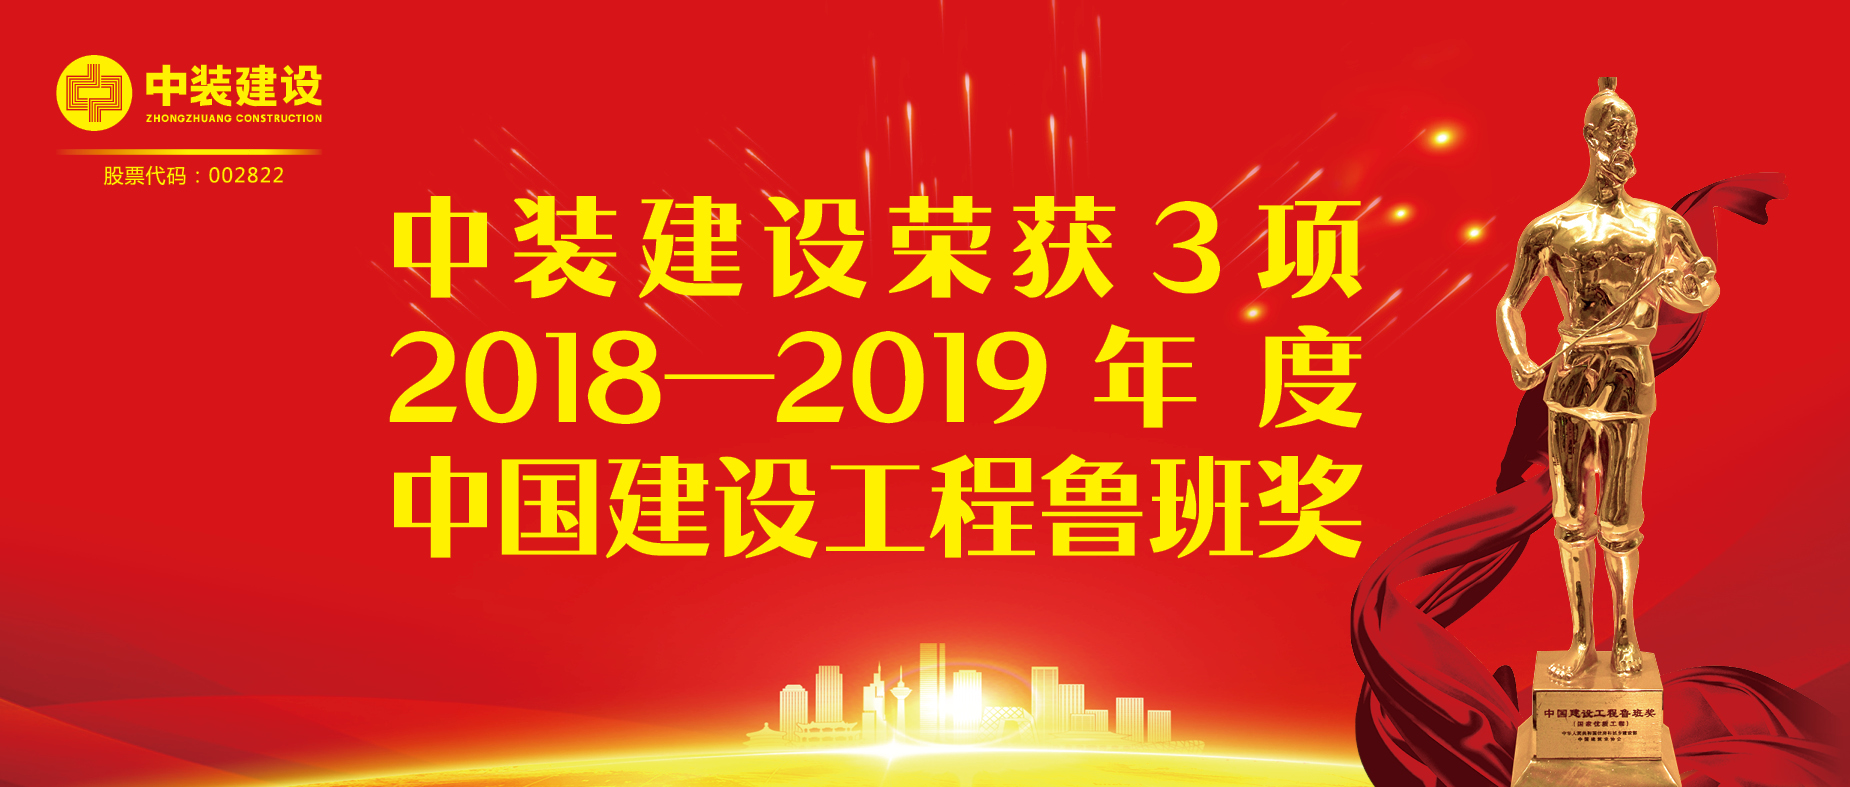 中装建设荣获3项2018-2019年度中国建设工程鲁班奖